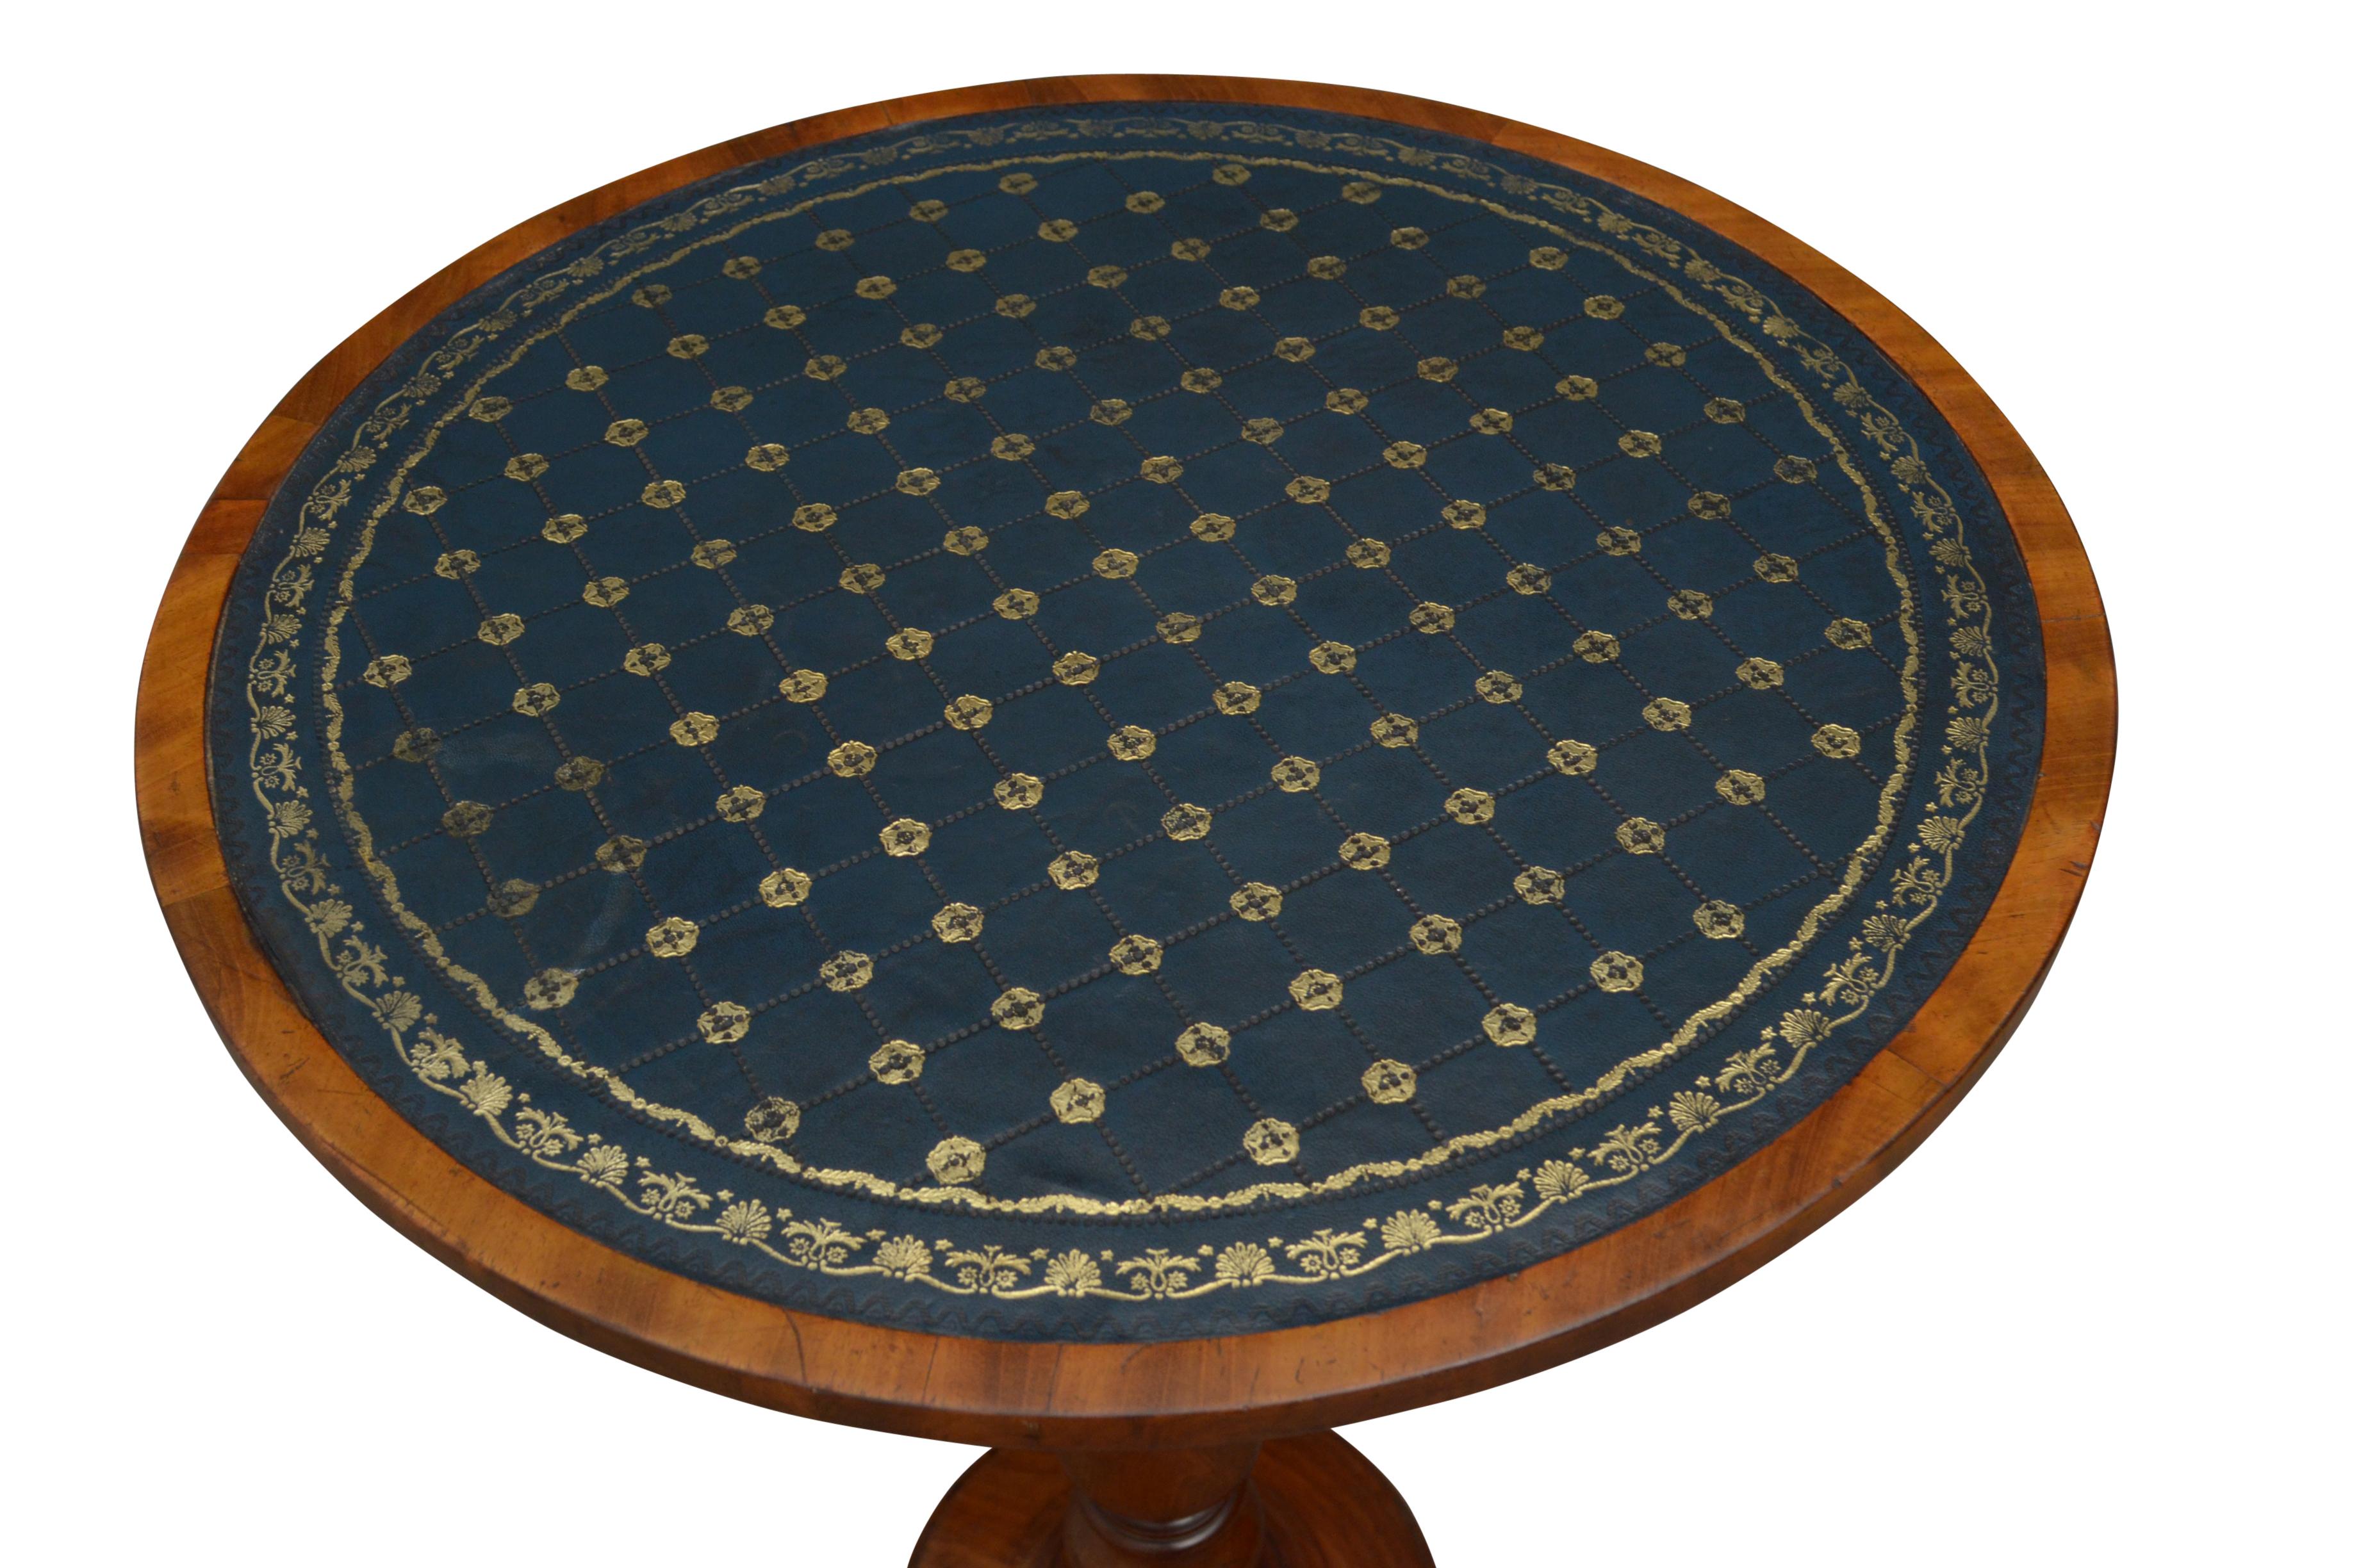 K0071, hochwertige Mahagoni-Lampe oder Beistelltisch mit runder Platte aus genarbtem Leder, die auf einer gedrechselten und geschnitzten Säule steht, die in einer runden, geformten Basis und 3 geformten Füßen endet. Dieser antike Tisch bewahrt seine